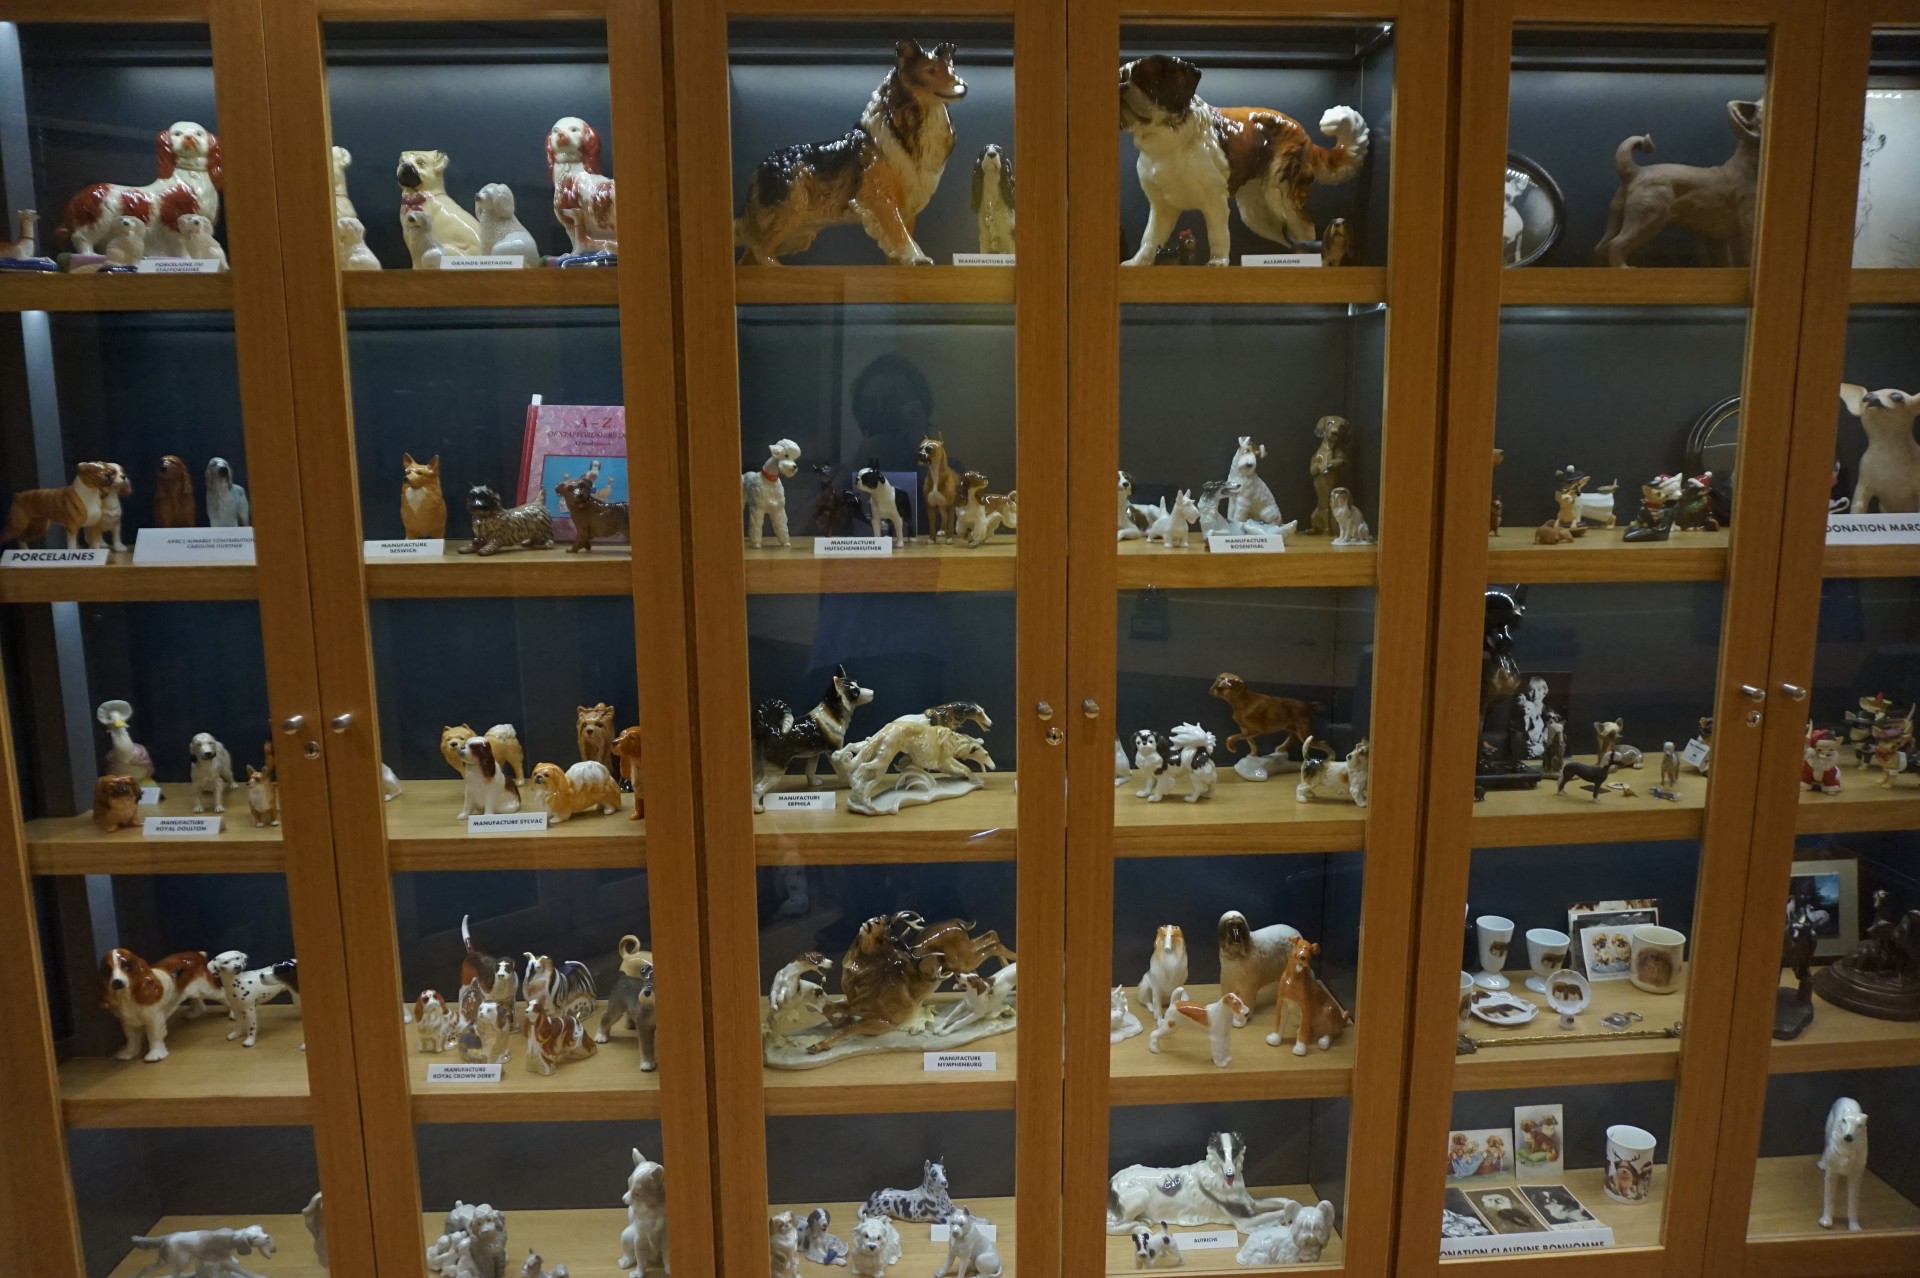 Porcelaines de chiens exposées dans une vitrine de la médiathèque